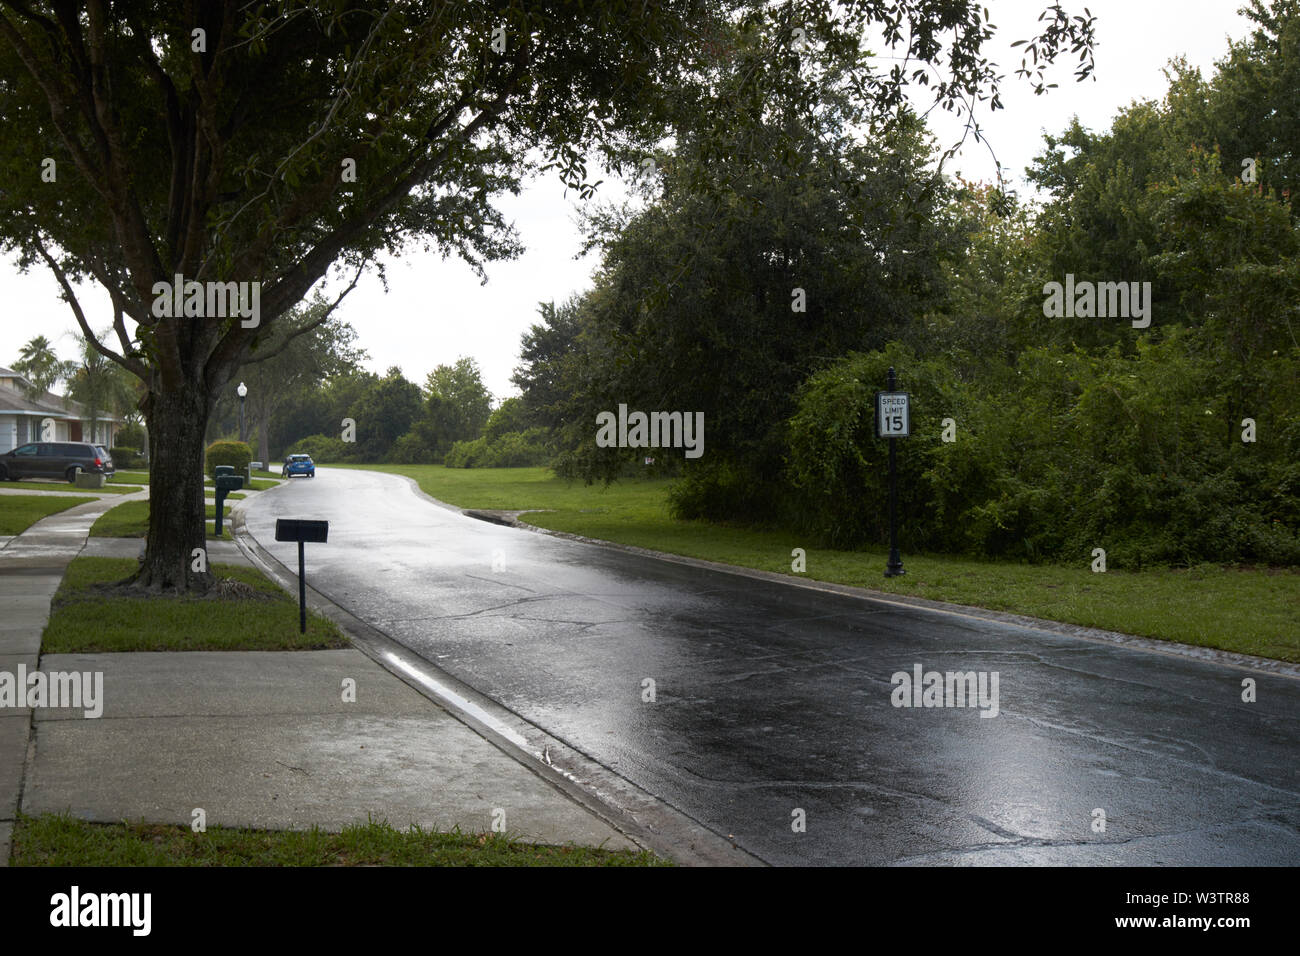 Regen auf Fußweg Bürgersteig durch gated community in Kissimmee während bedeckt stürmischer Sommertag Florida USA Vereinigte Staaten von Amerika Stockfoto